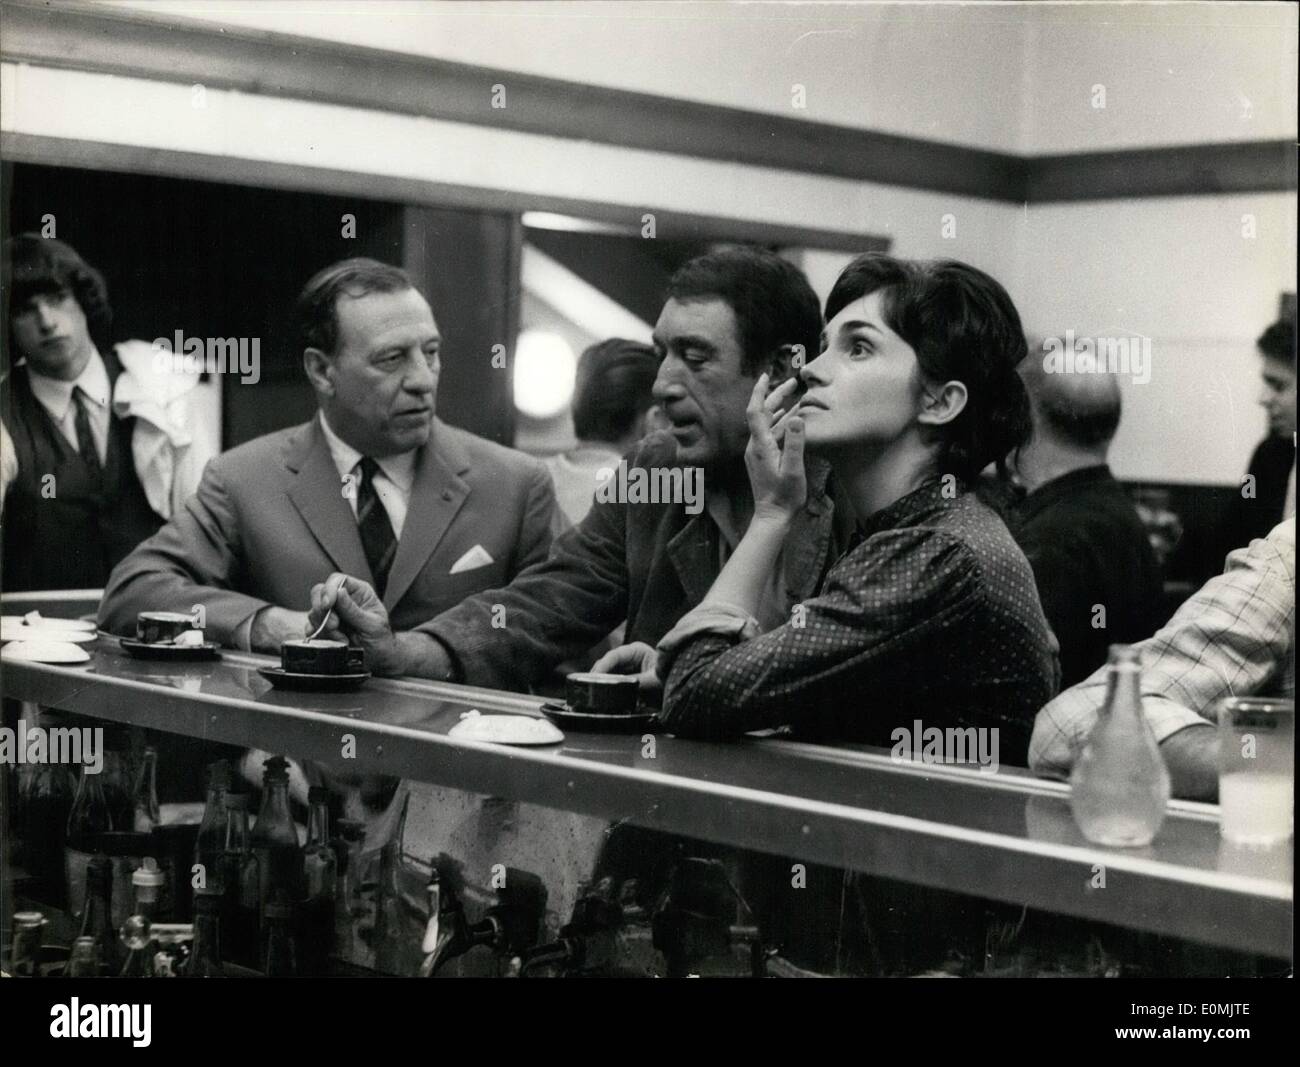 Sett. 09, 1955 - Anthony Quinn nel nuovo film: Anthony Quinn stelle in un nuovo film ''venticinquesima ora'' ora fatto a Parigi. Mostra fotografica Foto Stock